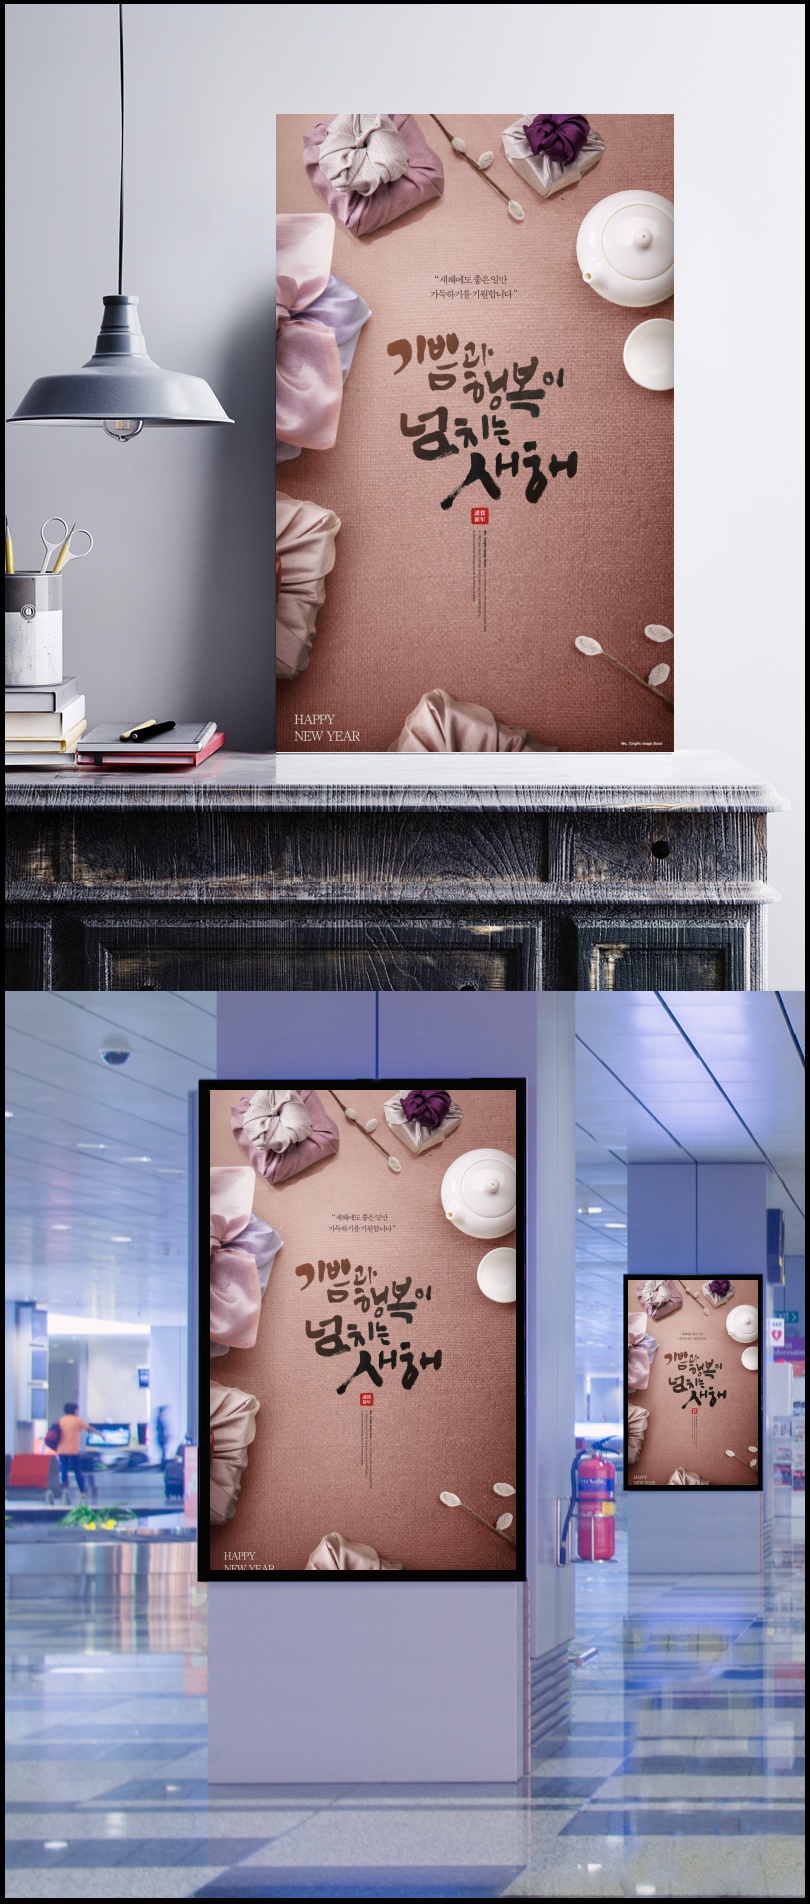 粉色包裹_褐色牛皮桌面_白瓷茶壶_中国风_新年海报设计PSD_ti219a18414